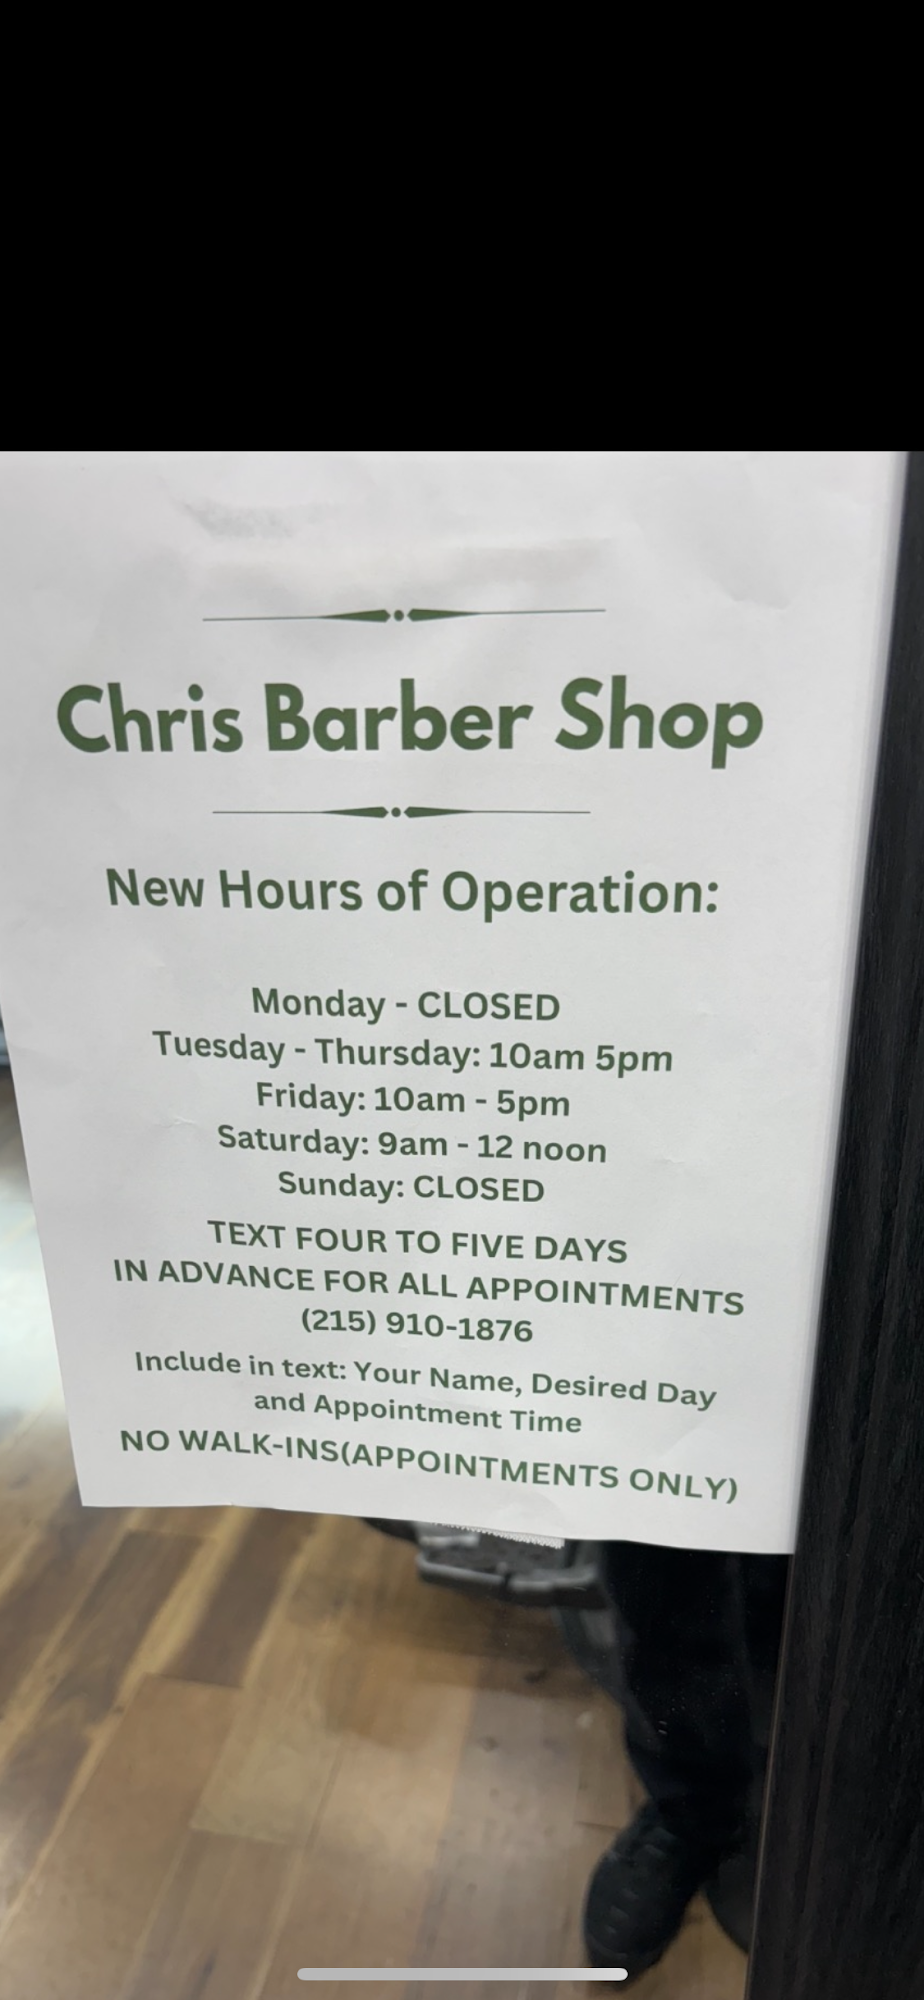 Chris Barber Shop 101 N Washington St, Havre De Grace Maryland 21078